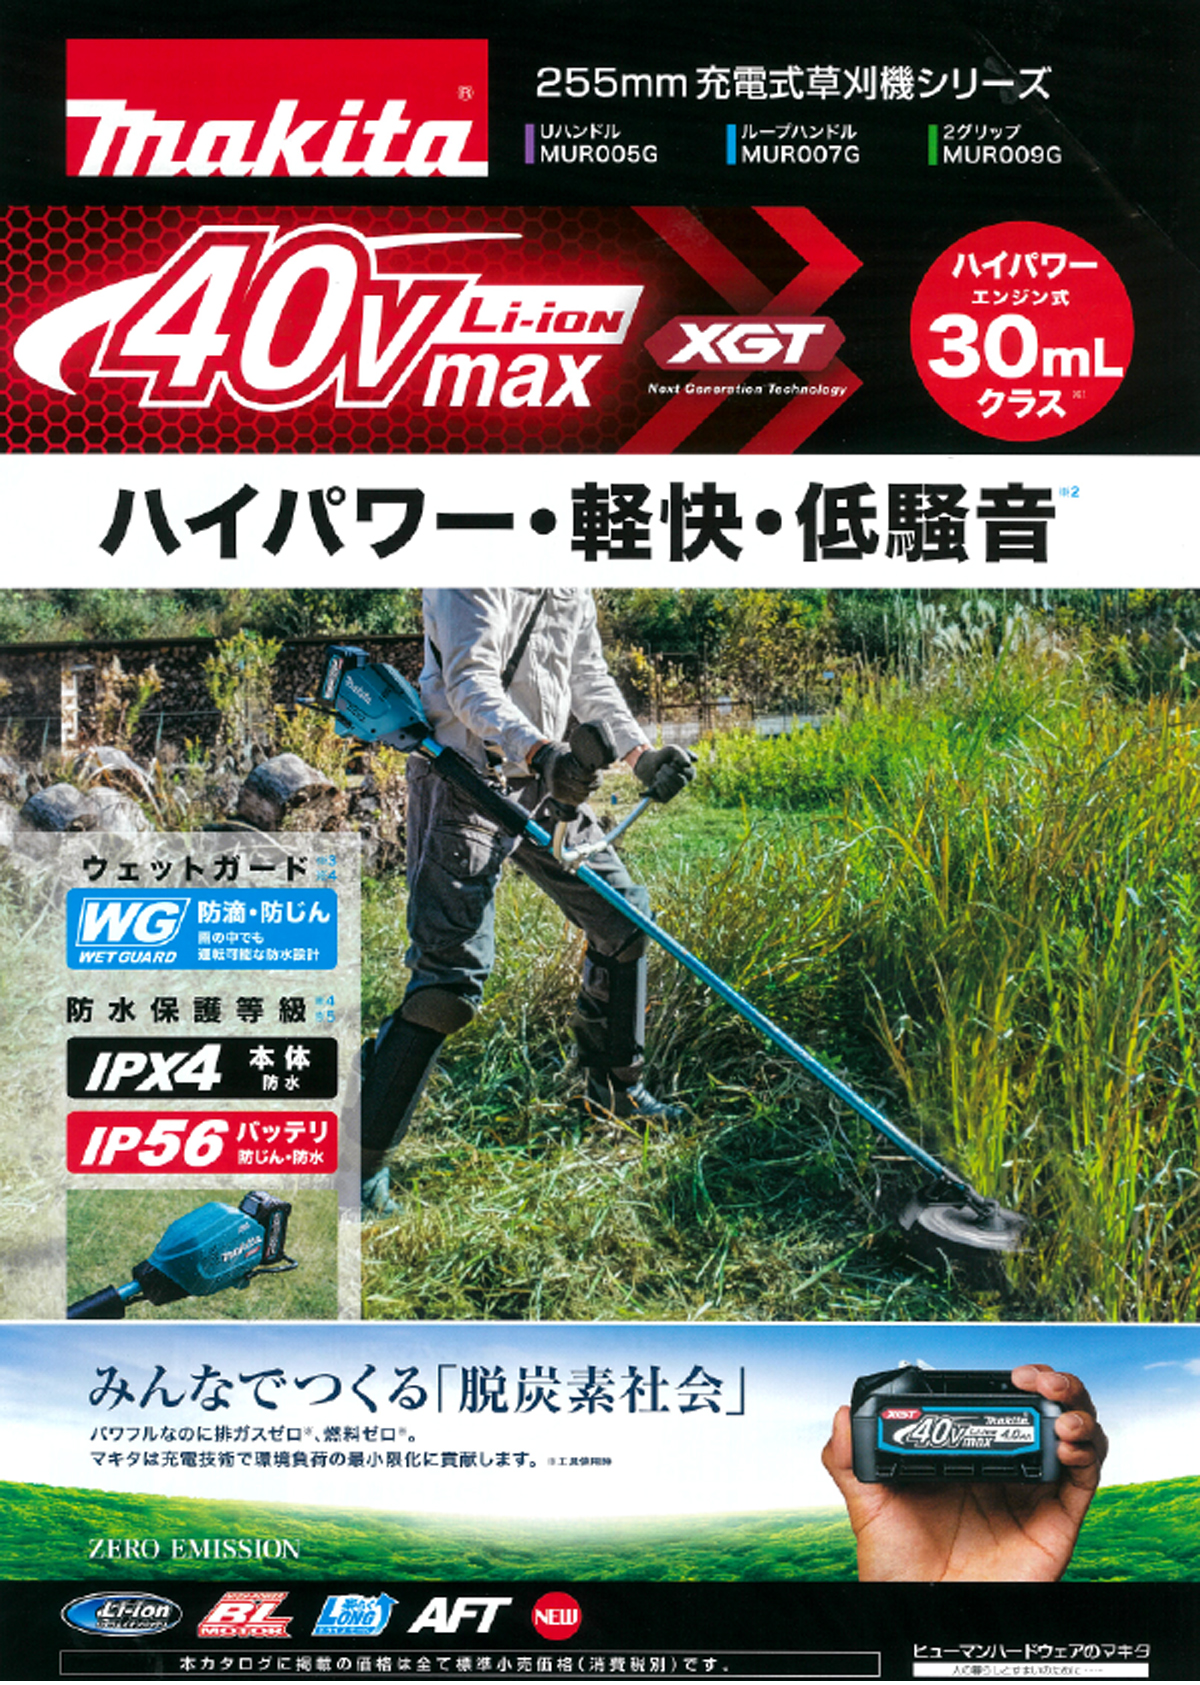 ☆マキタ MUR007GRM 40Vmax充電式草刈機(ループハンドル) ウエダ金物